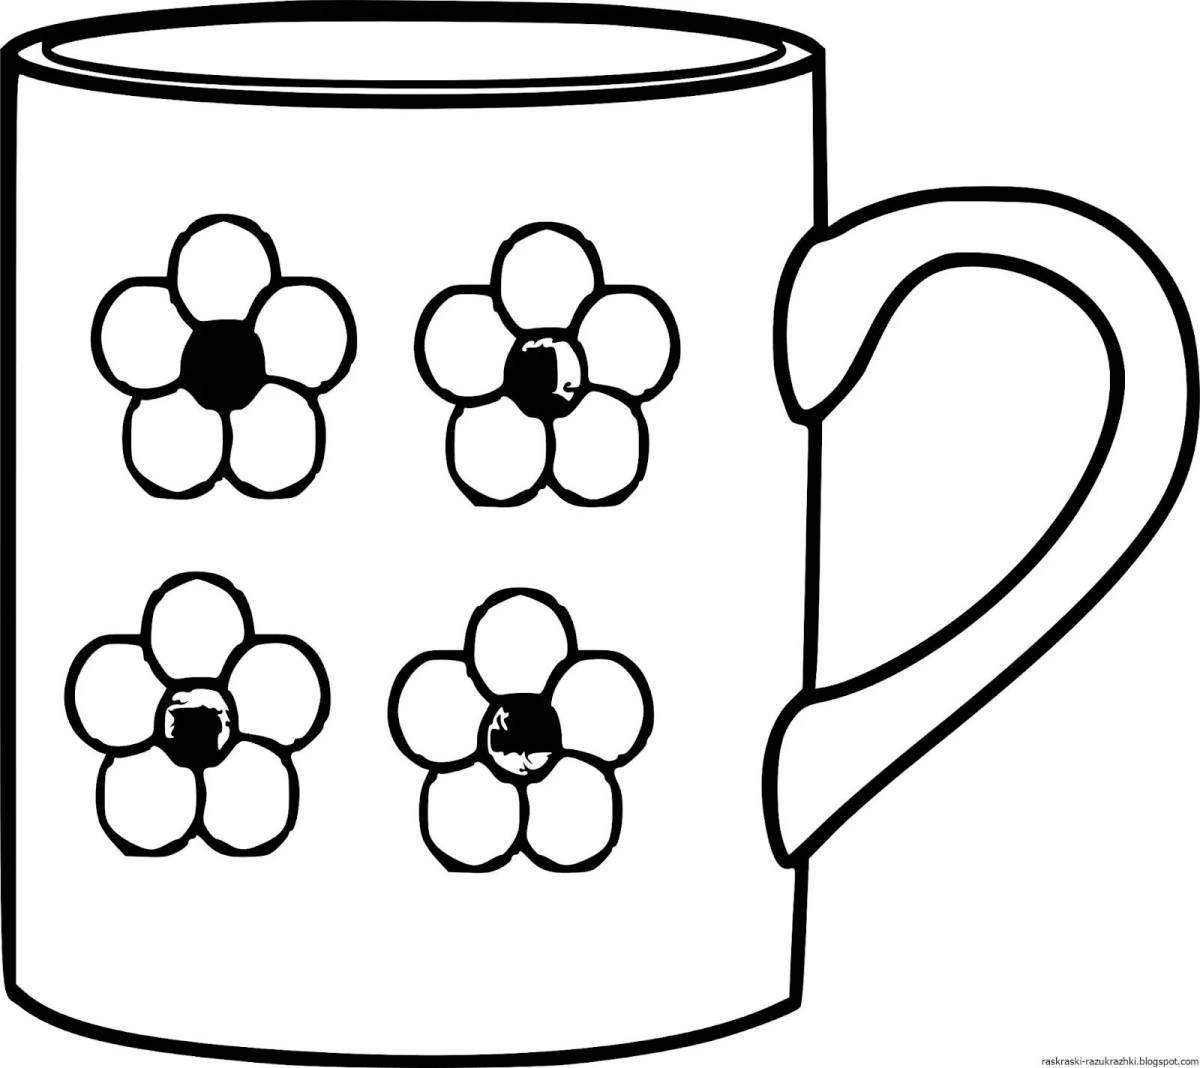 Exciting polka dot mug coloring page